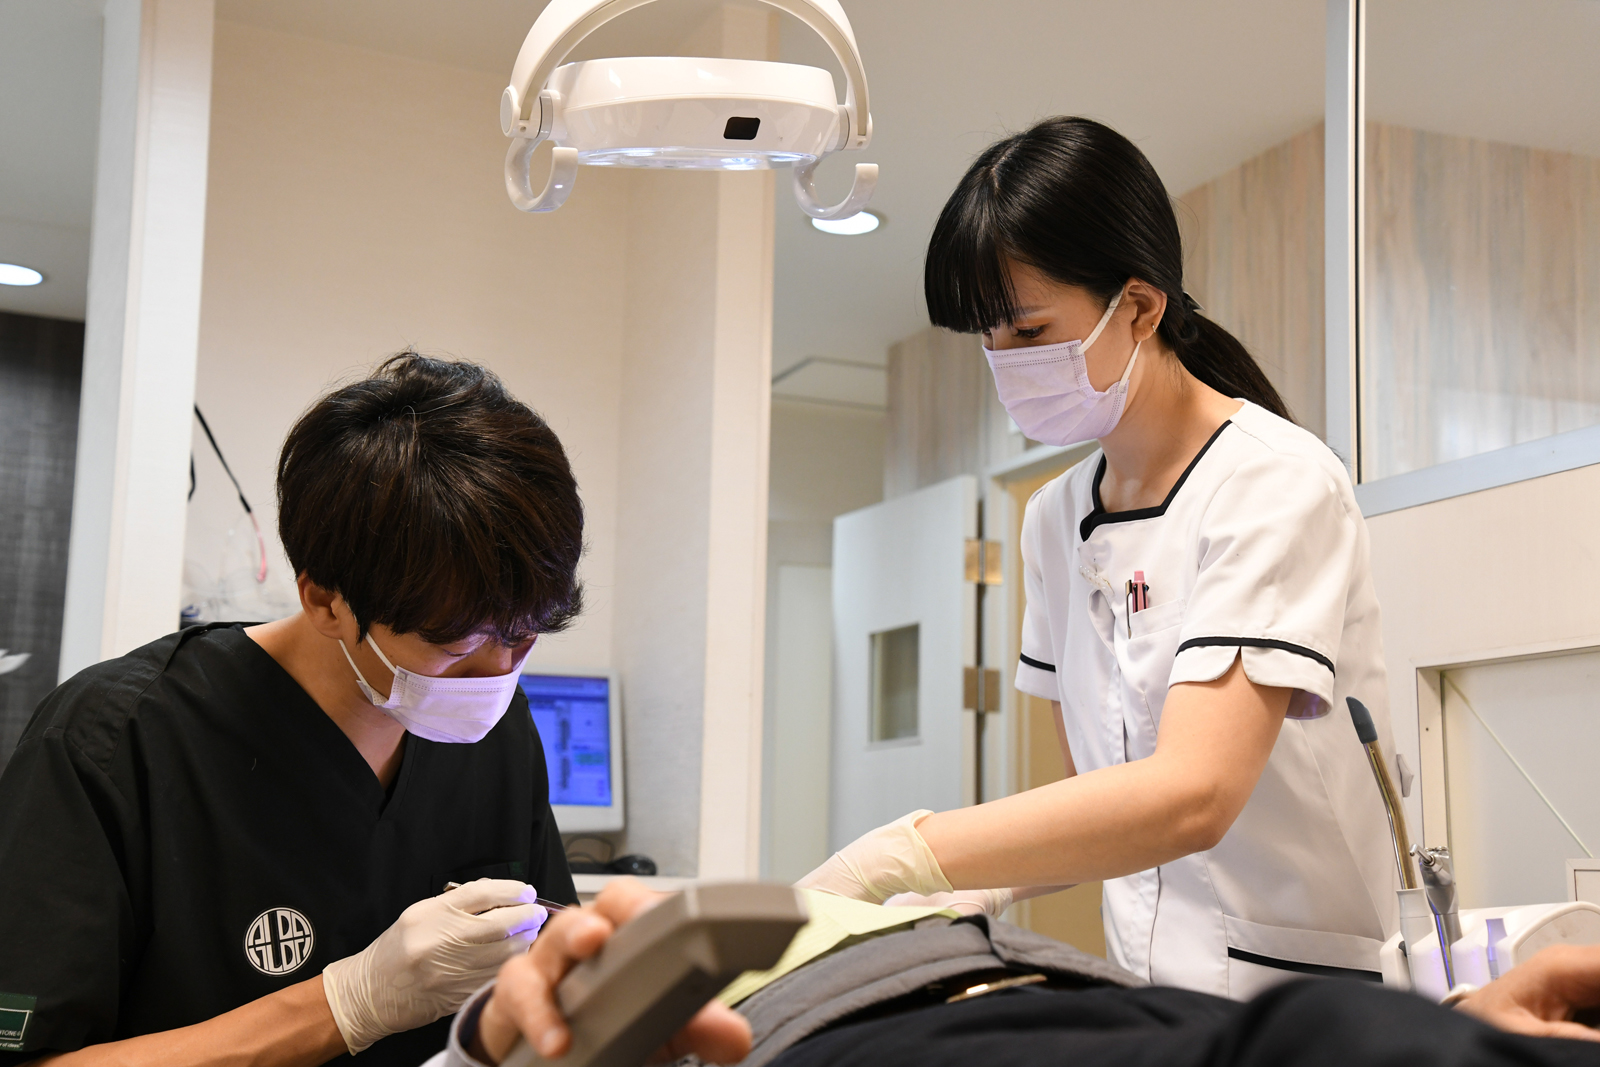 歯のクリーニングをする歯科医師と歯科衛生士の写真です